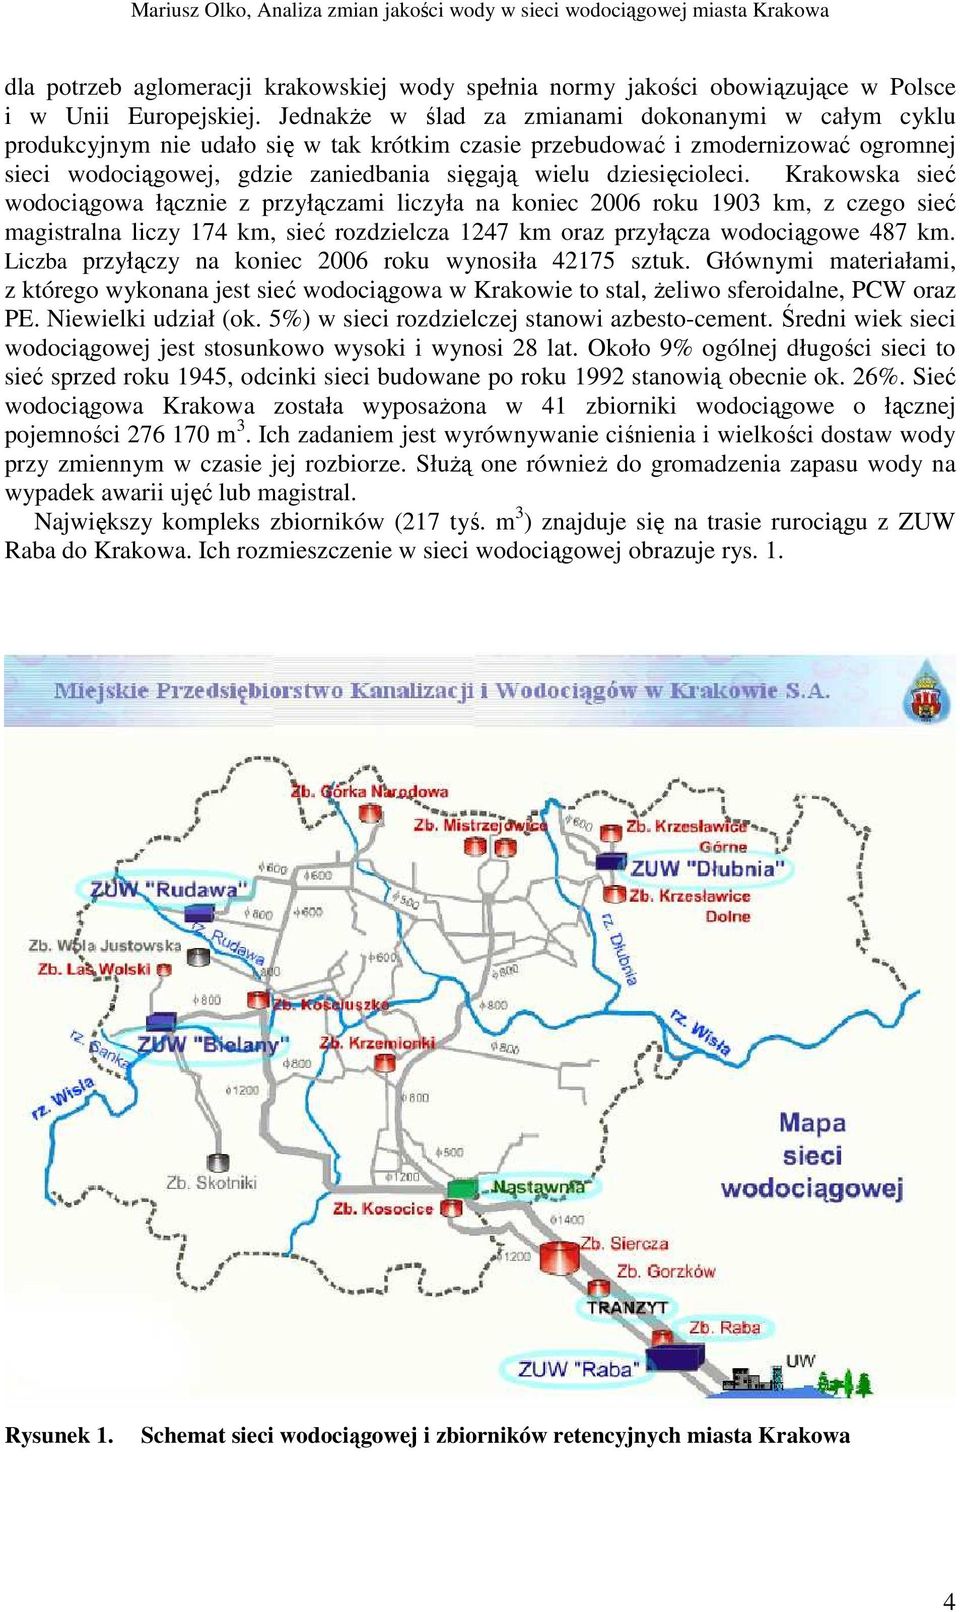 dziesięcioleci. Krakowska sieć wodociągowa łącznie z przyłączami liczyła na koniec 2006 roku 1903 km, z czego sieć magistralna liczy 174 km, sieć rozdzielcza 1247 km oraz przyłącza wodociągowe 487 km.